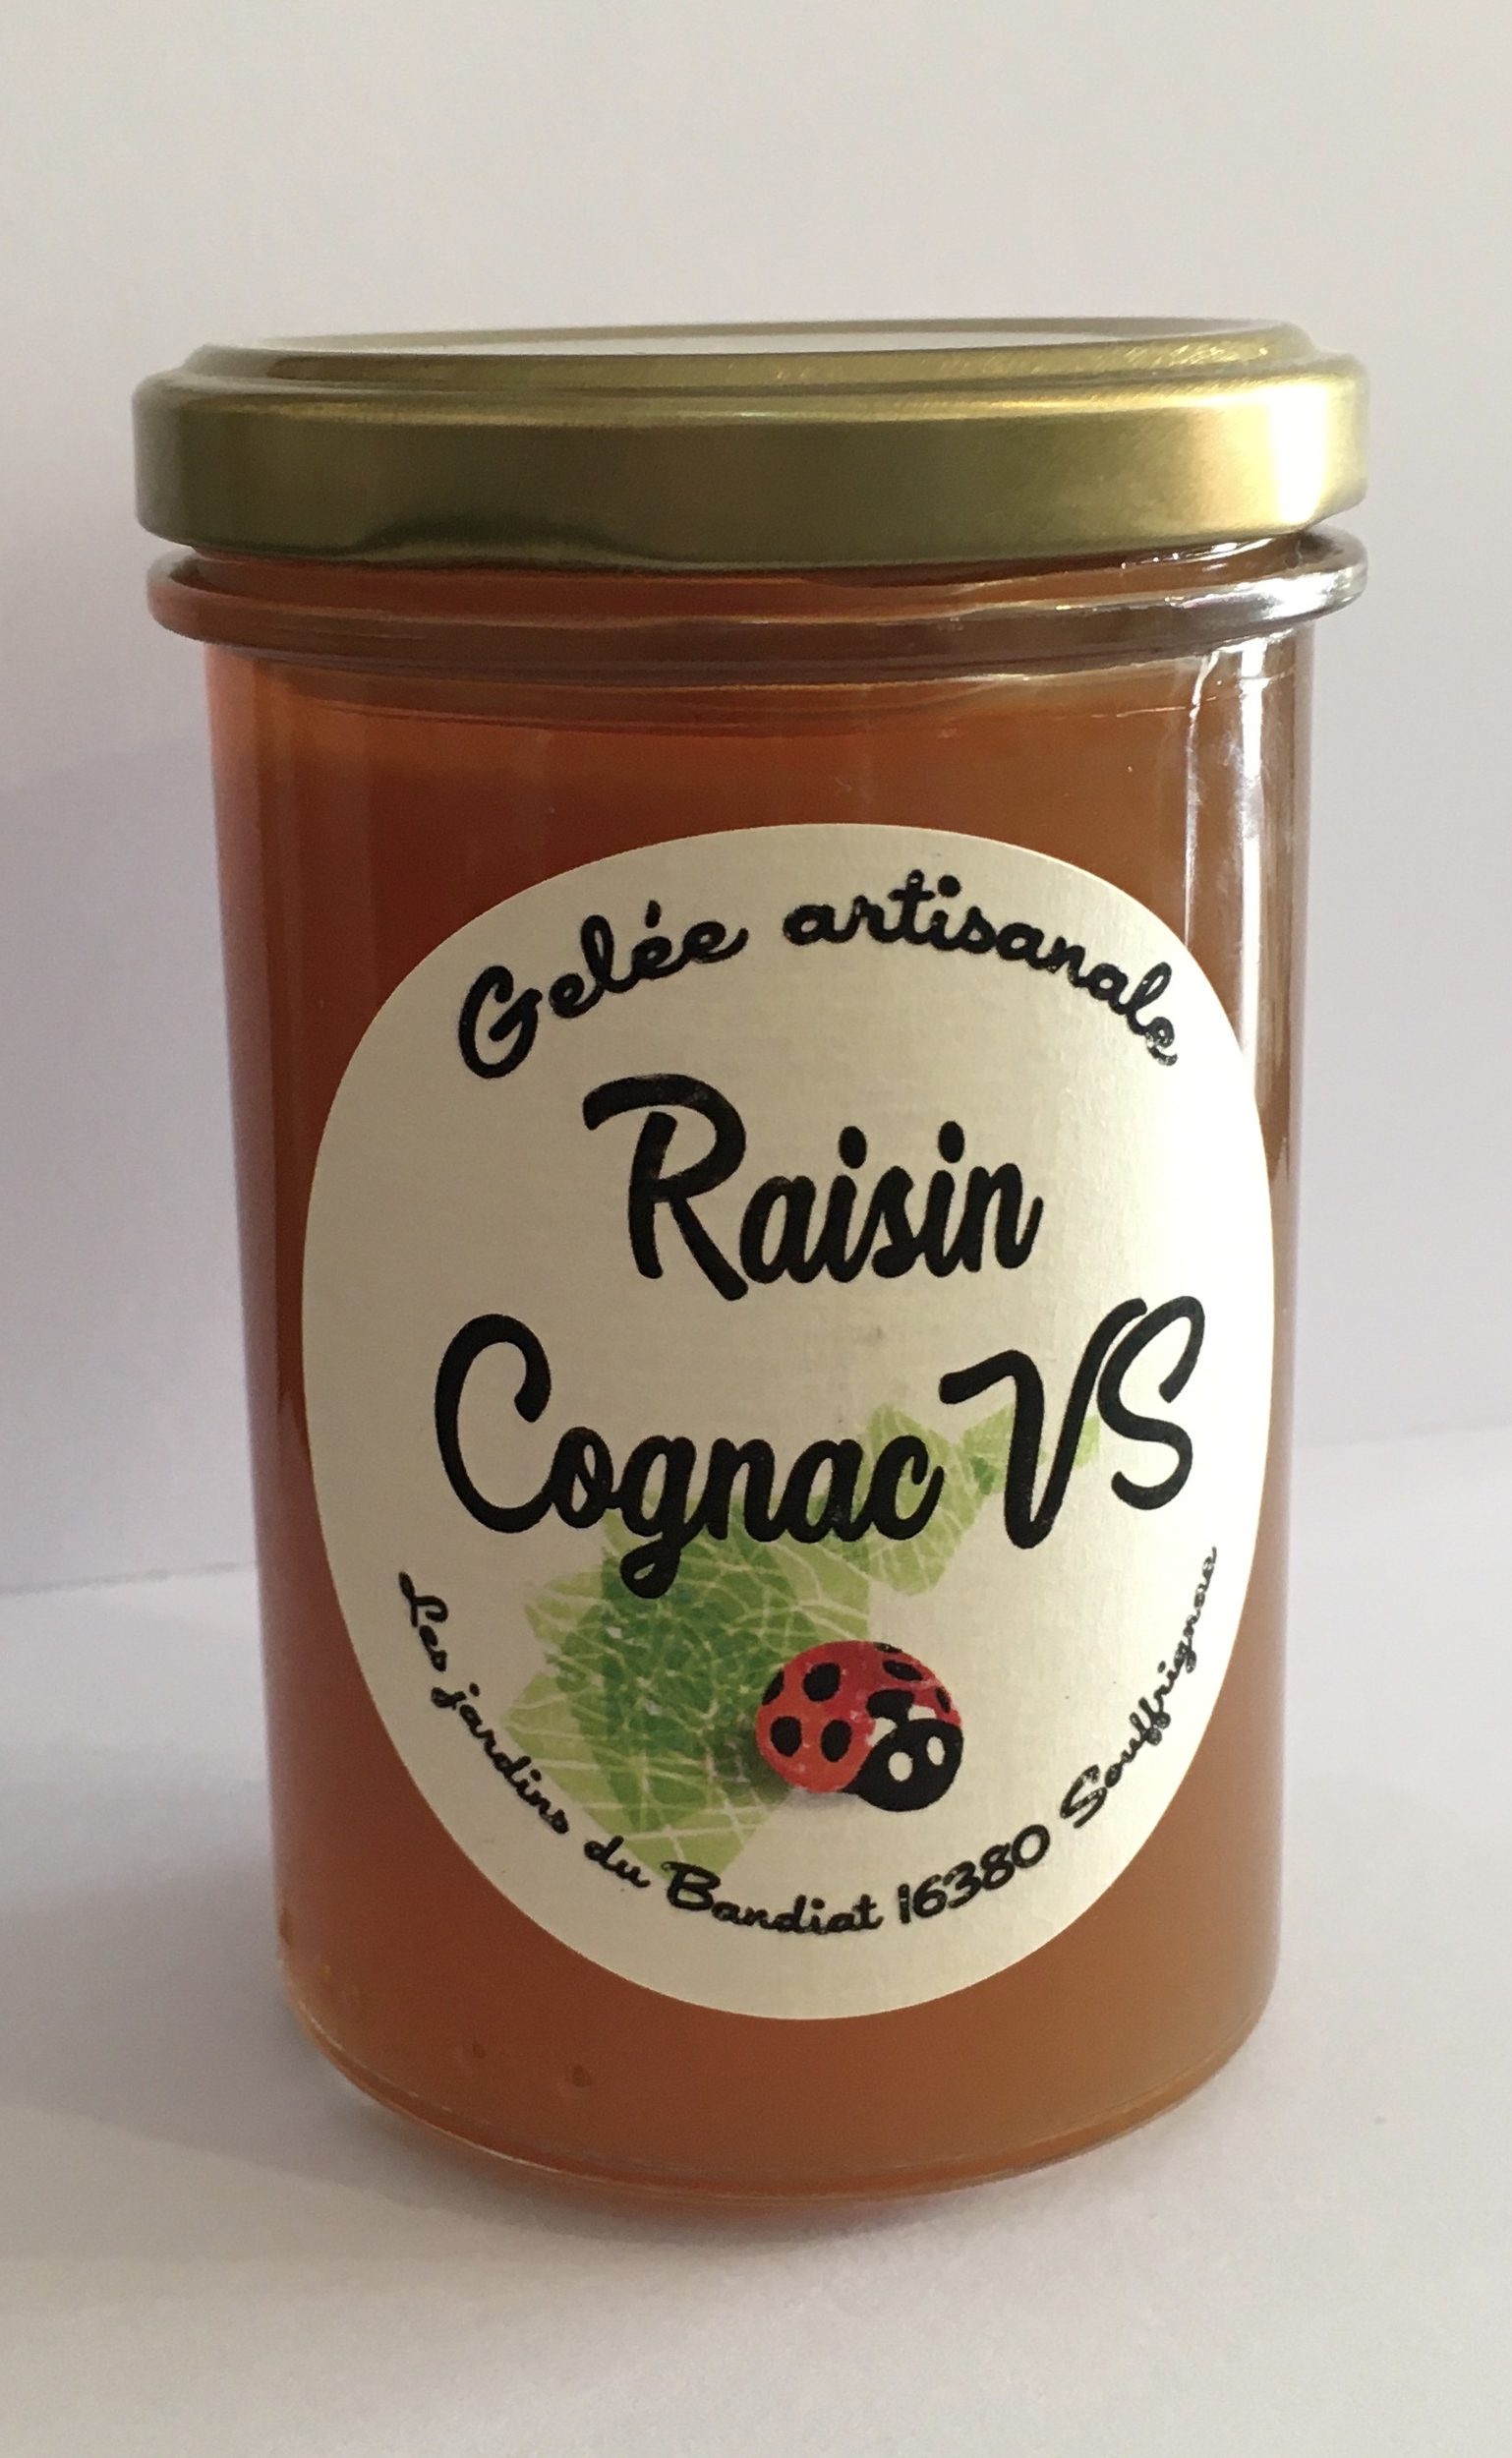 Gelée artisanale Raisin Cognac - Les Jardins du Bandiat 265g